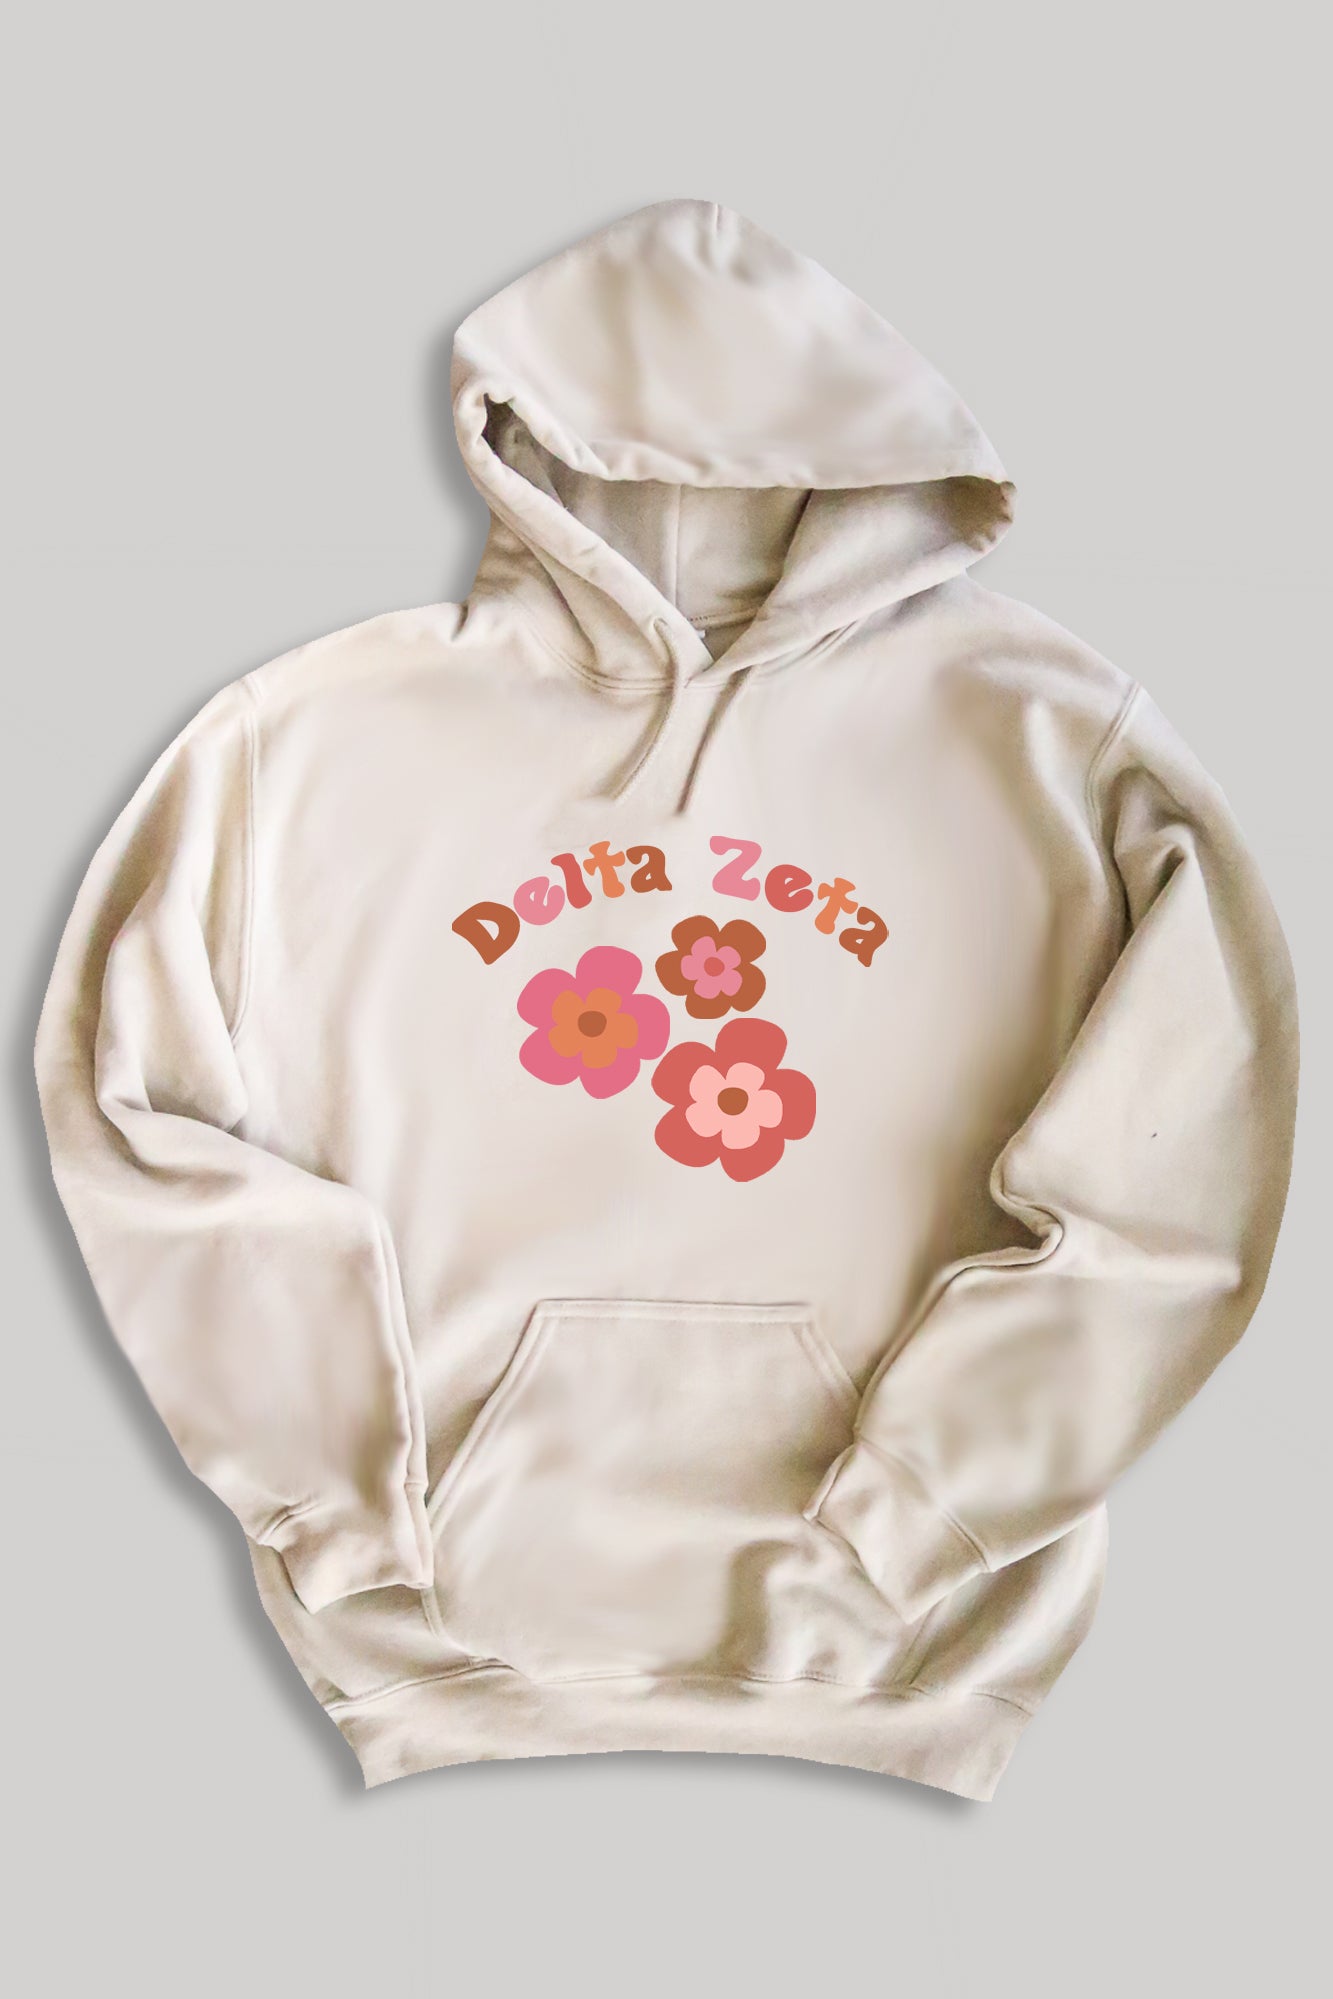 Groovy hoodie - Delta Zeta